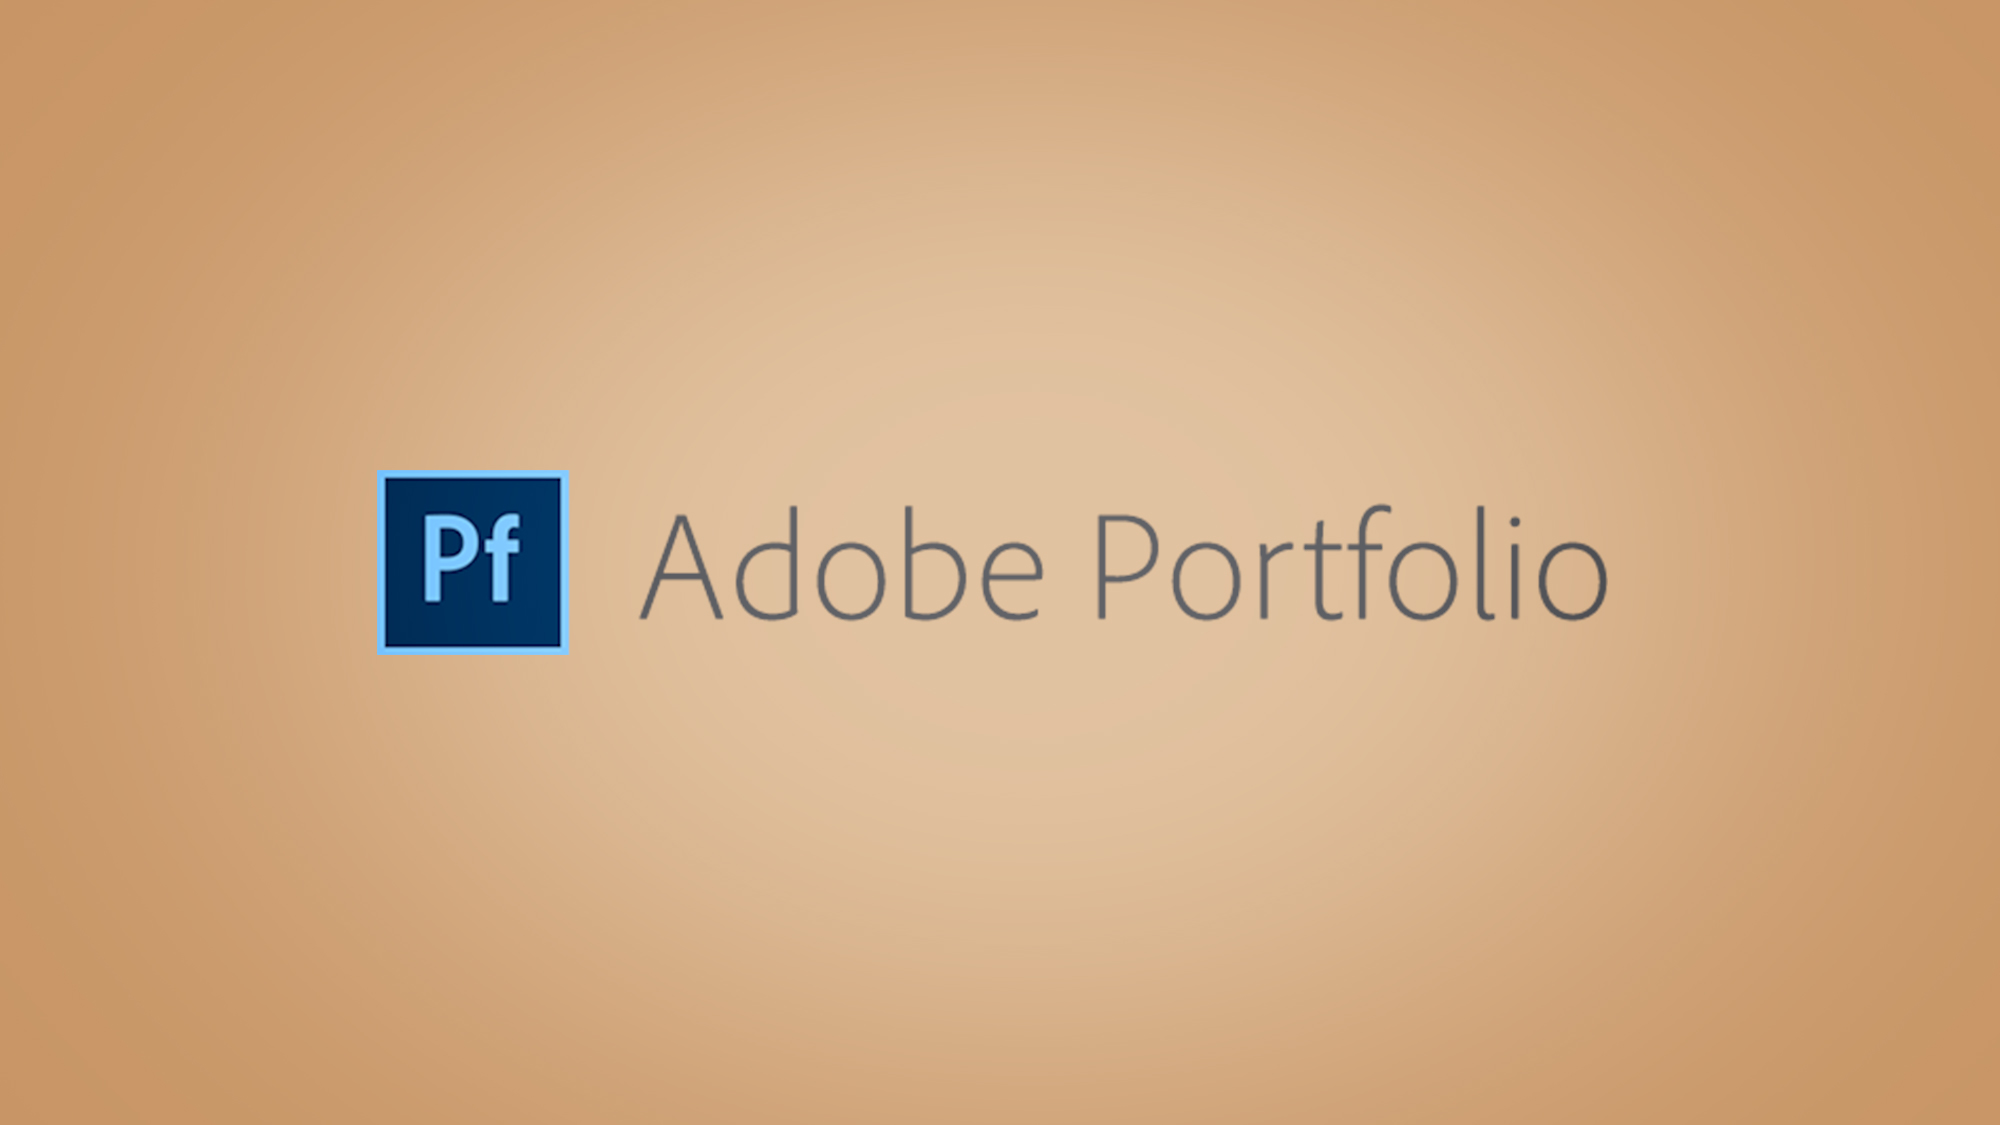 Adobe Portfolio logo